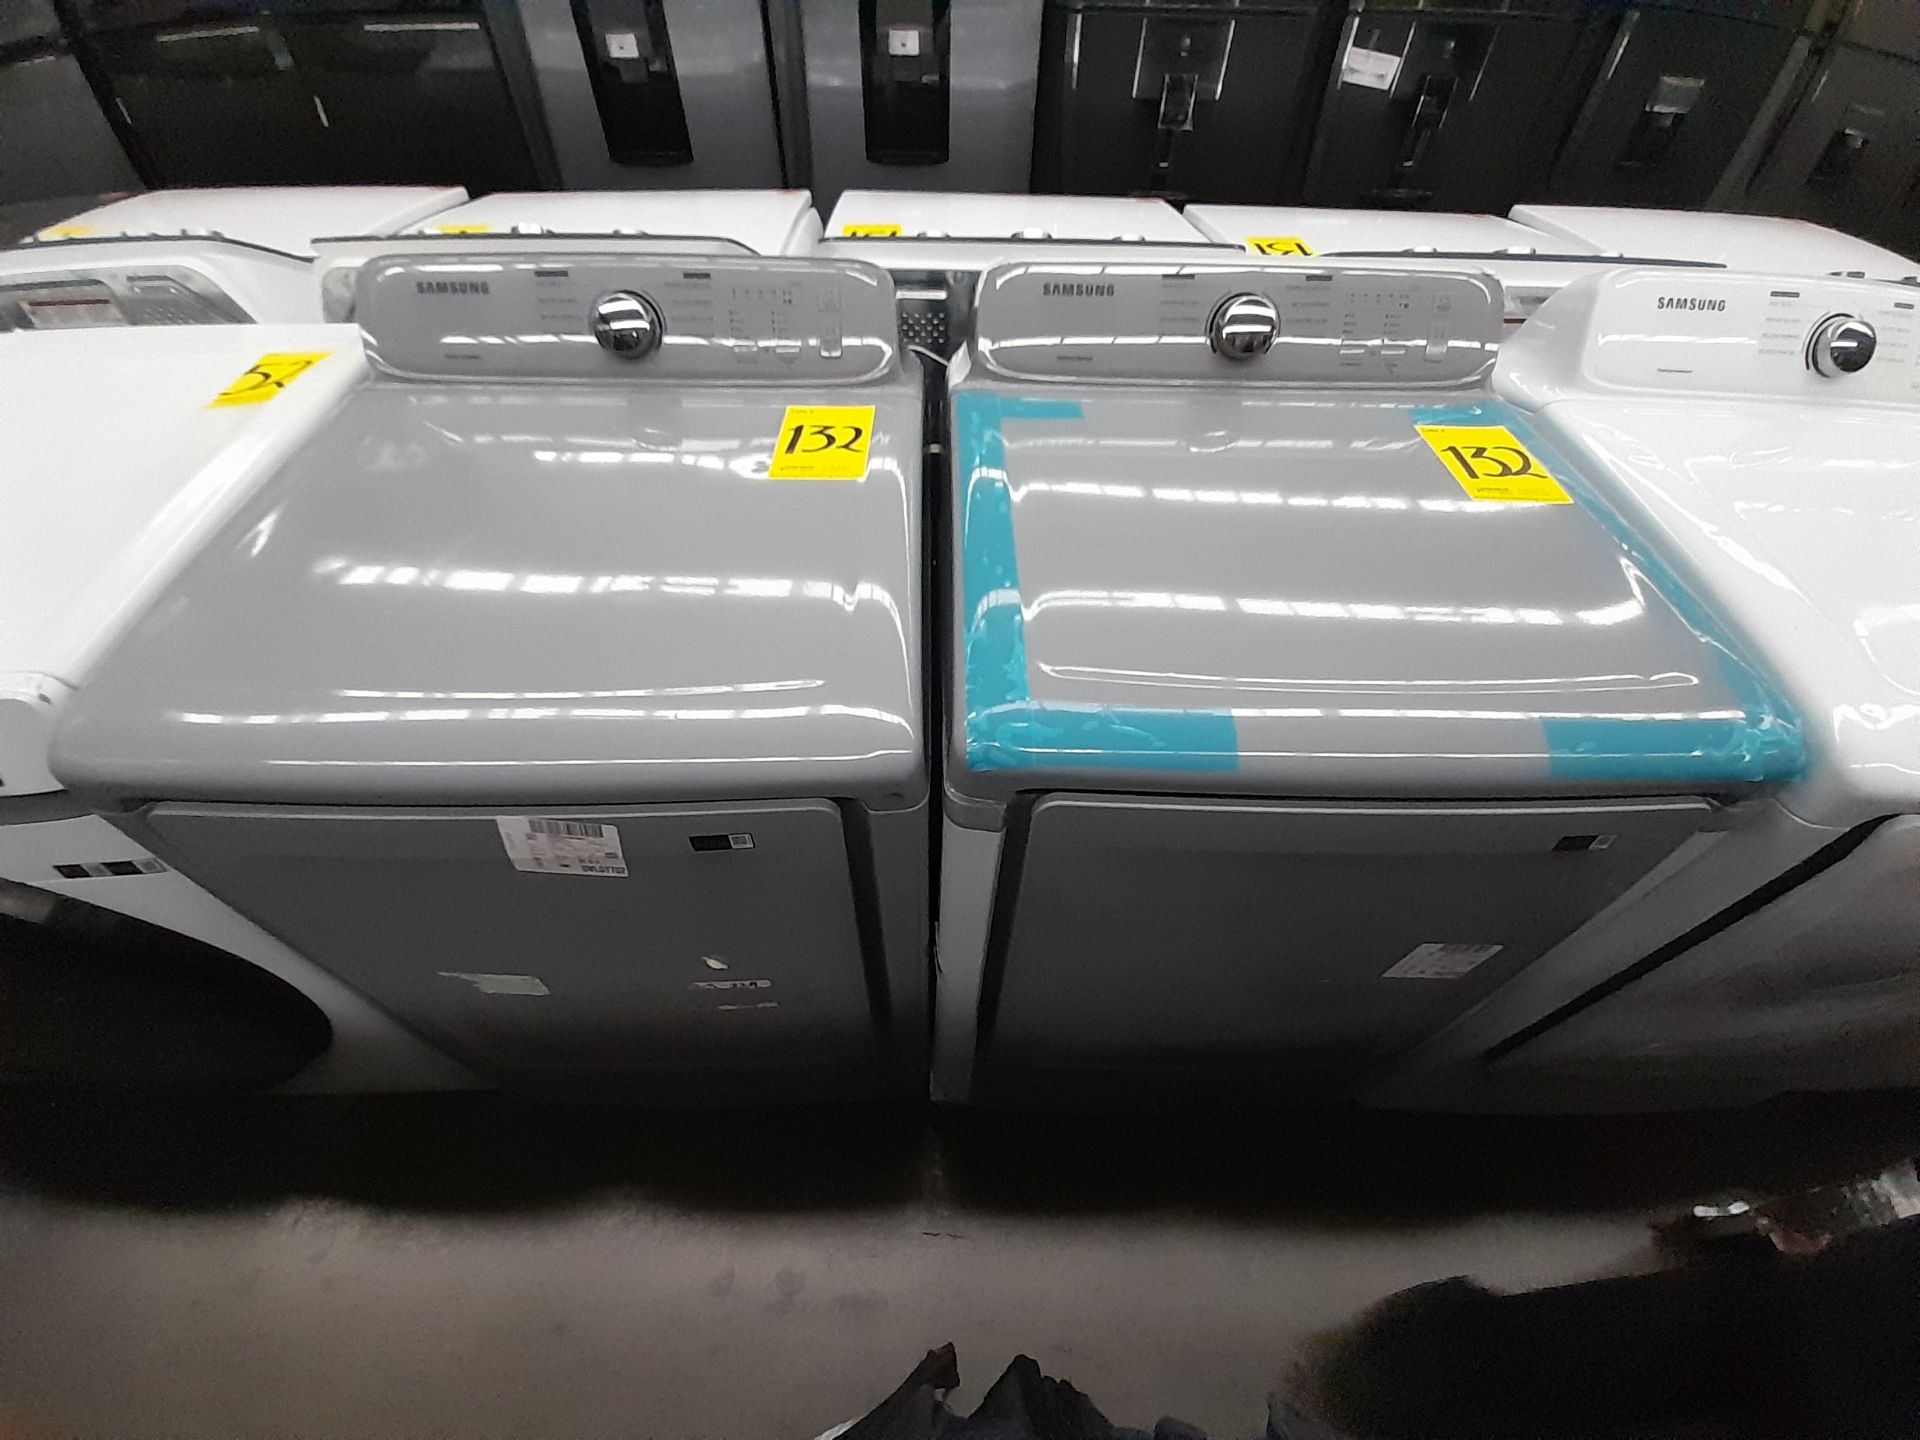 Lote de 1 lavadora y 1 Secadora contiene: 1 lavadora de 20 KG, Marca SAMSUNG, Modelo DVG24A3000Y, S